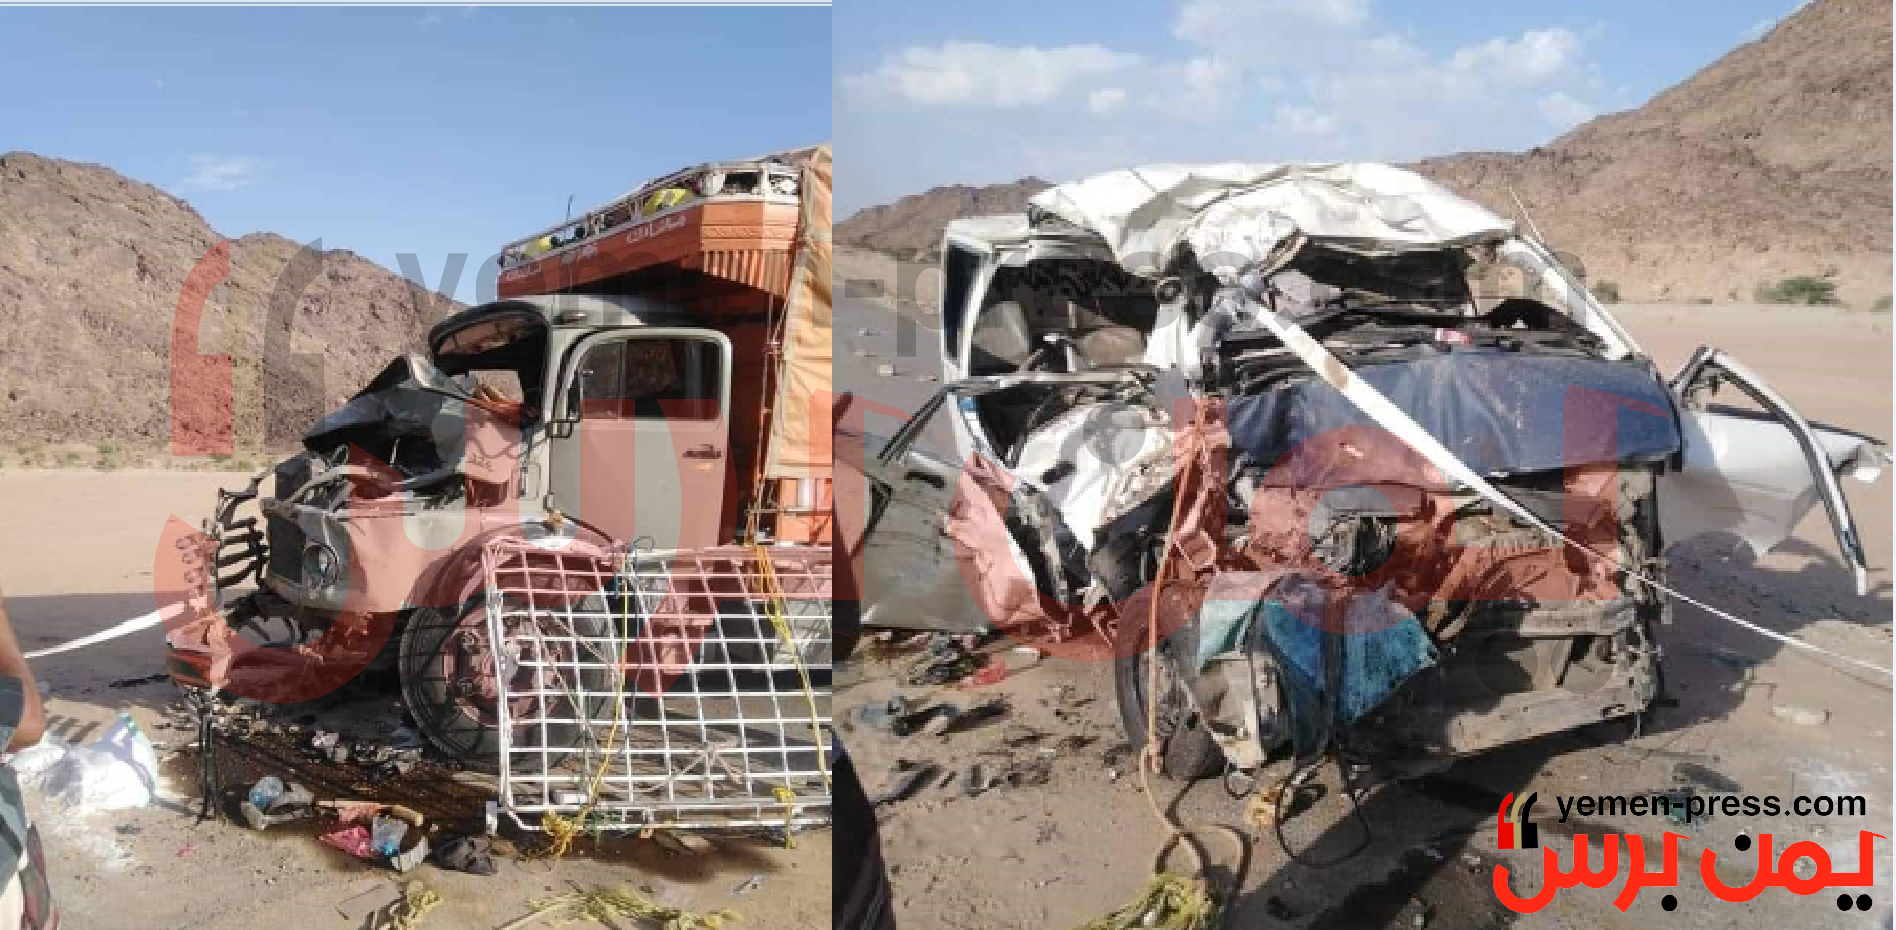 حادث مروري يؤدي بحياة 13 شخص جميعهم من محافظة تعز (صور)